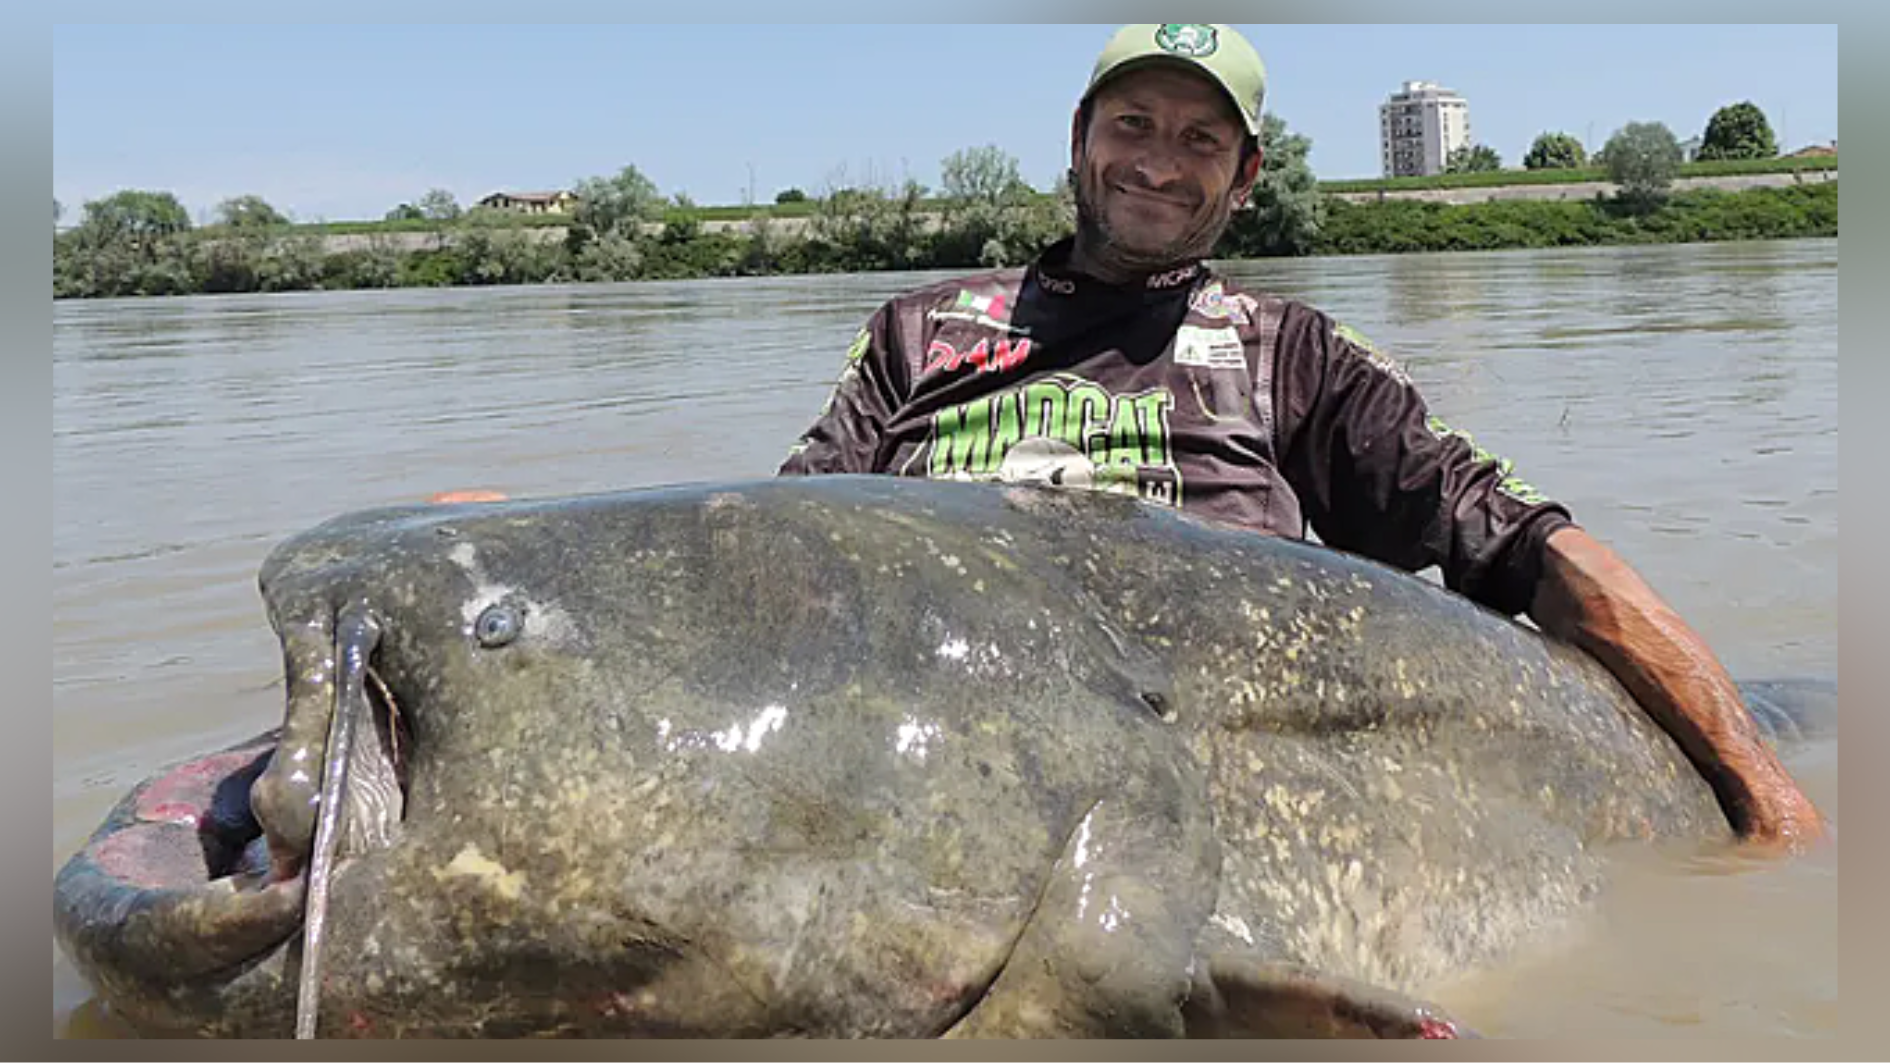 Angler hooks 'monster' 9-foot-long catfish